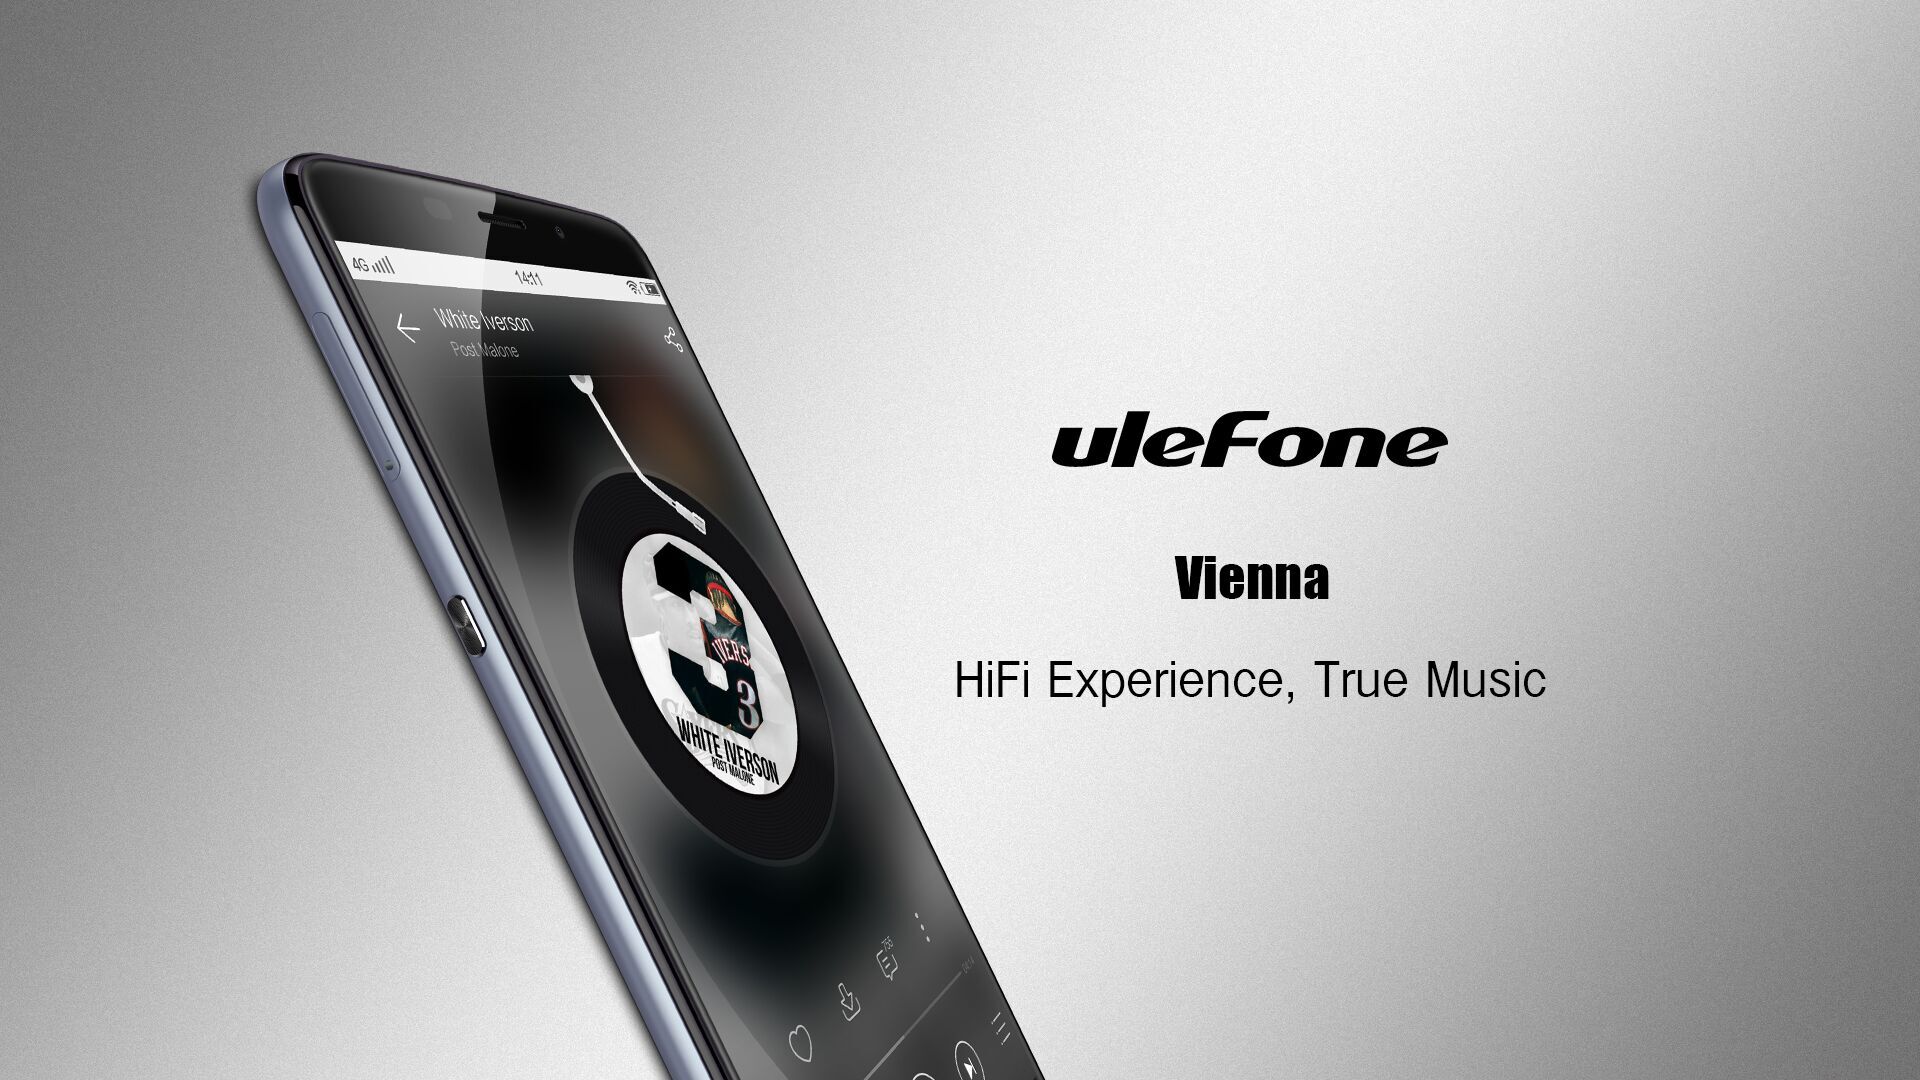 Ulefone Vienna